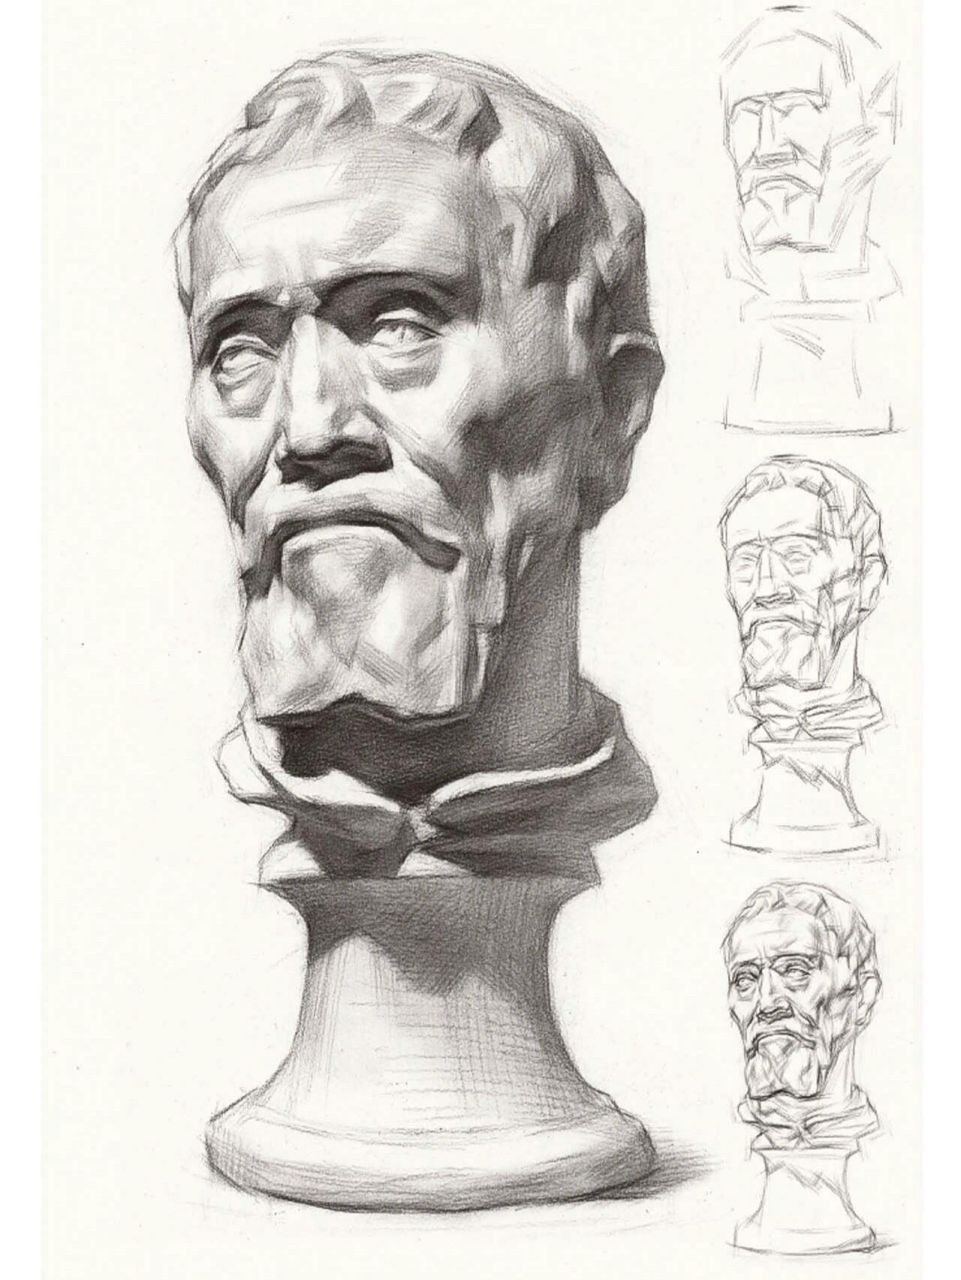 素描石膏头像——米开朗基罗 米开朗基罗是一位身世有些凄惨的艺术家